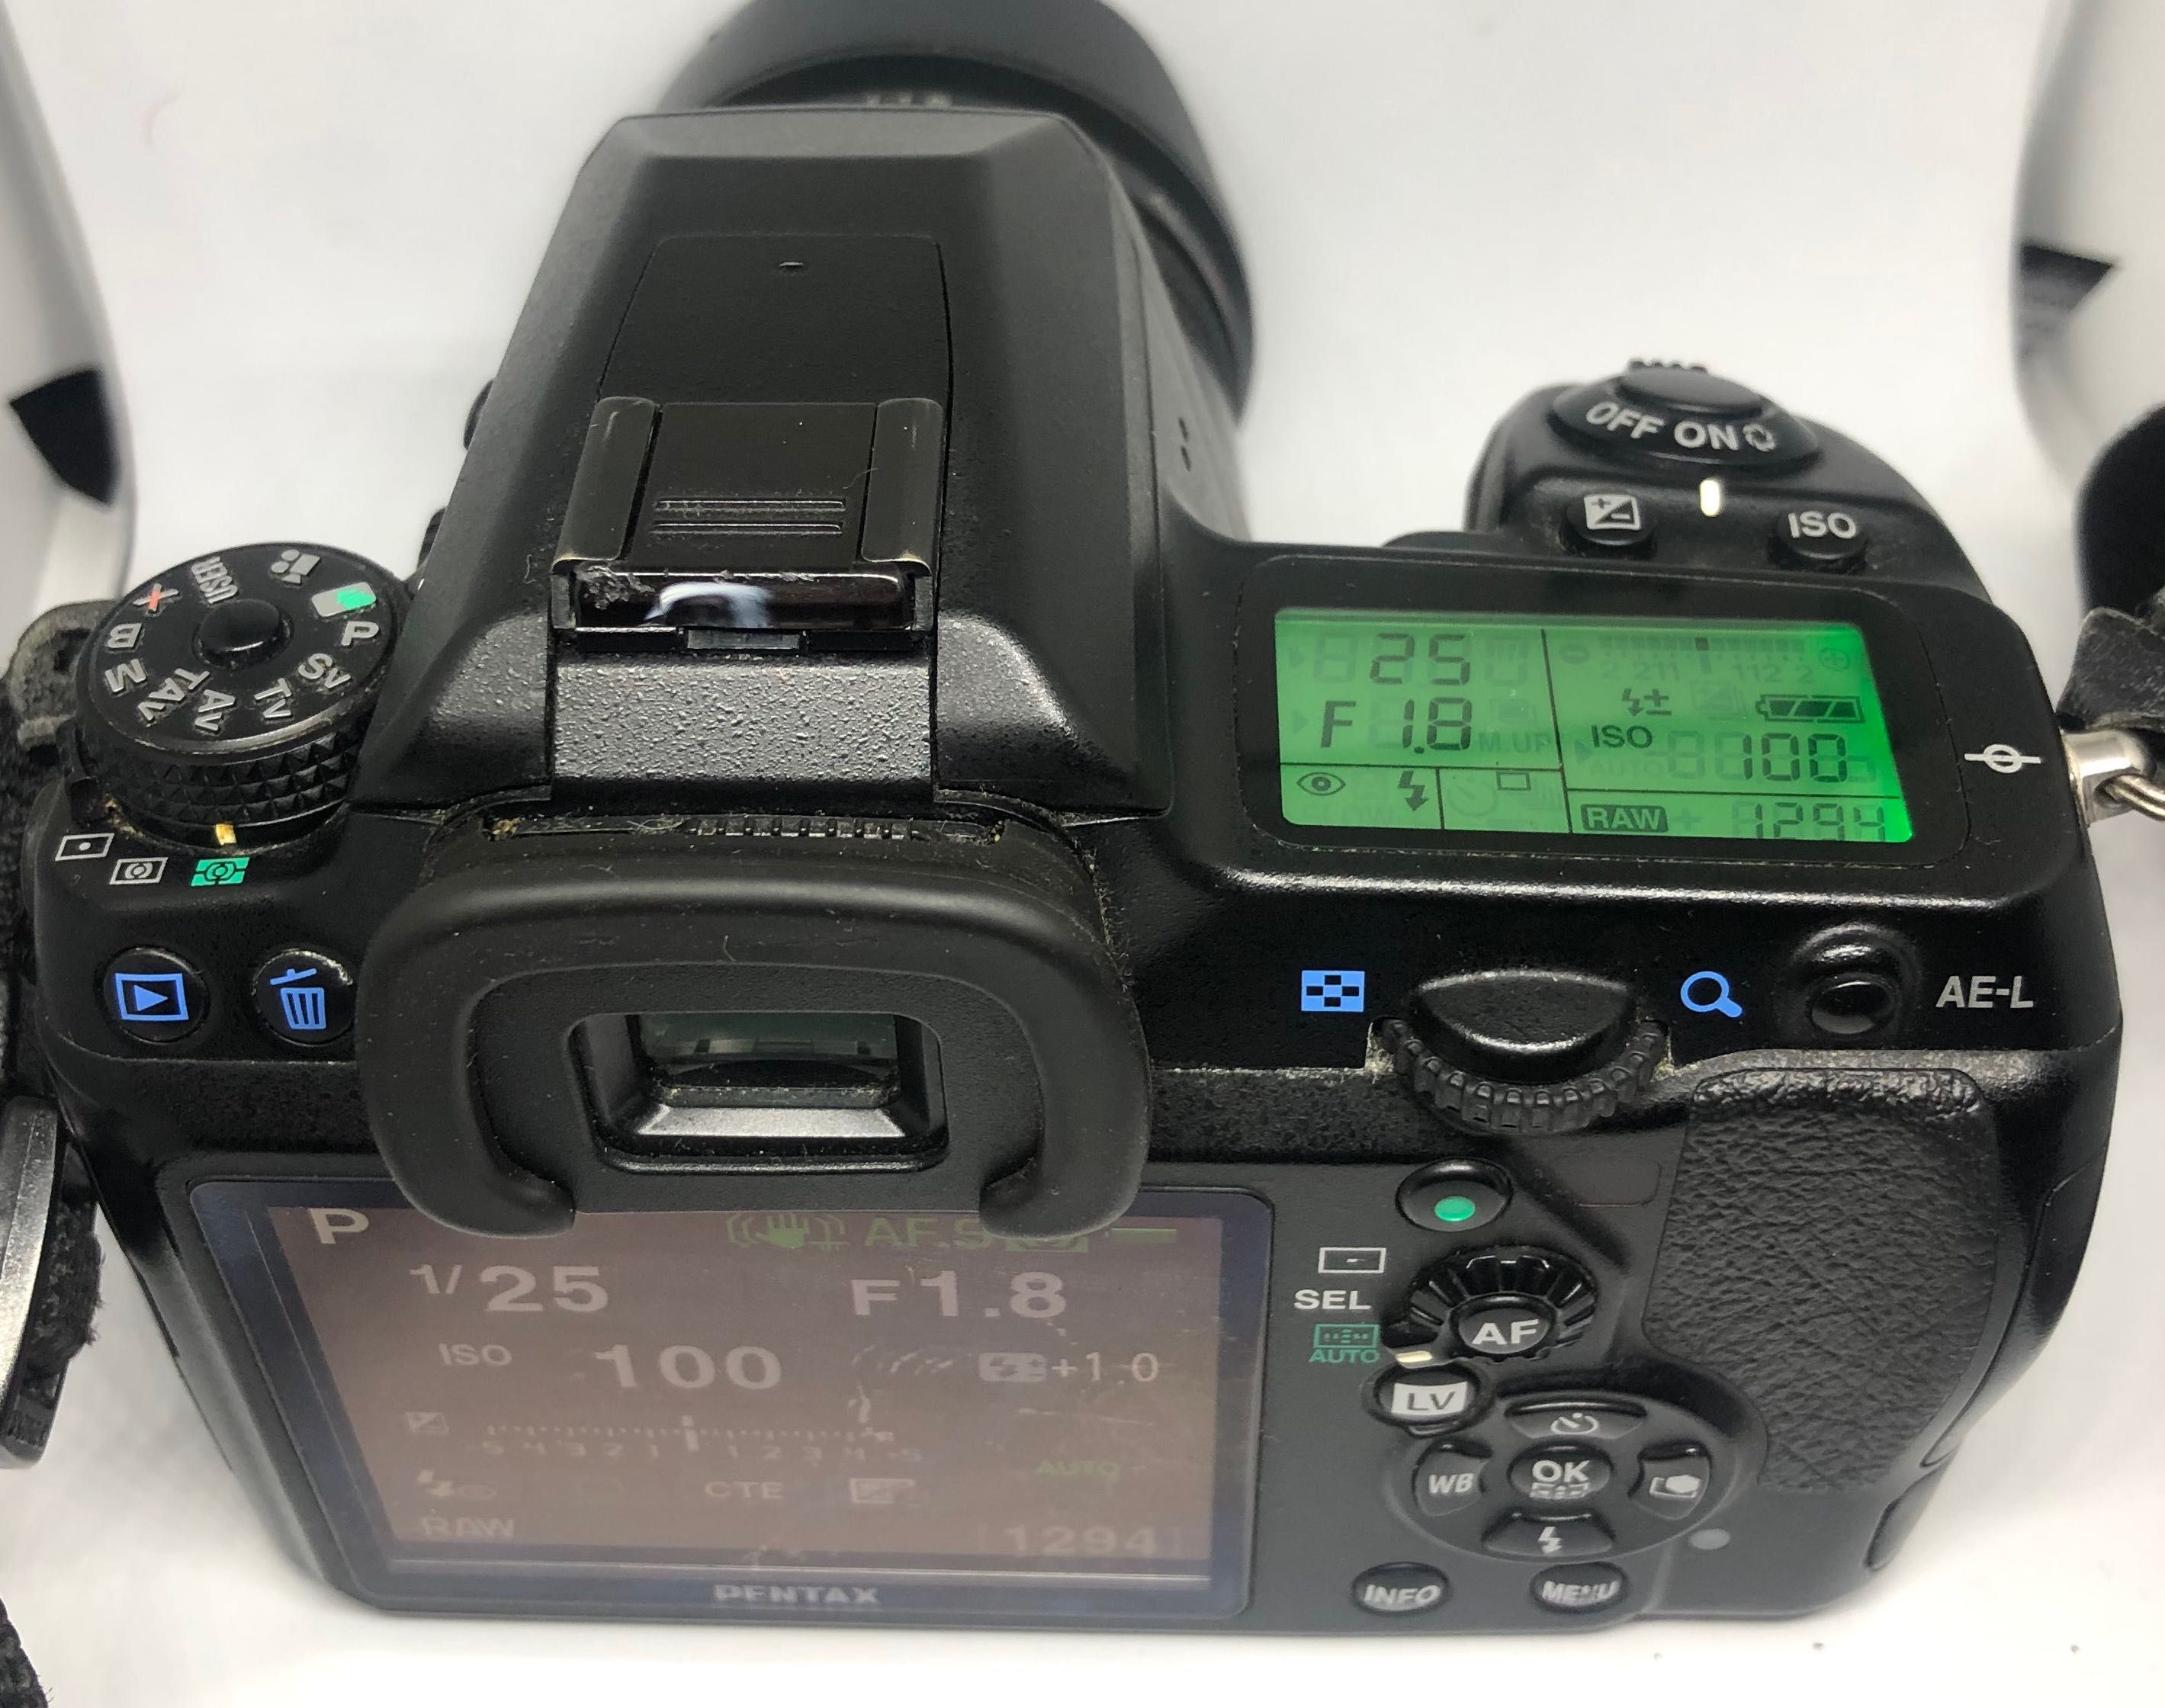 Цифрова дзеркальна камера Pentax K-7 Body